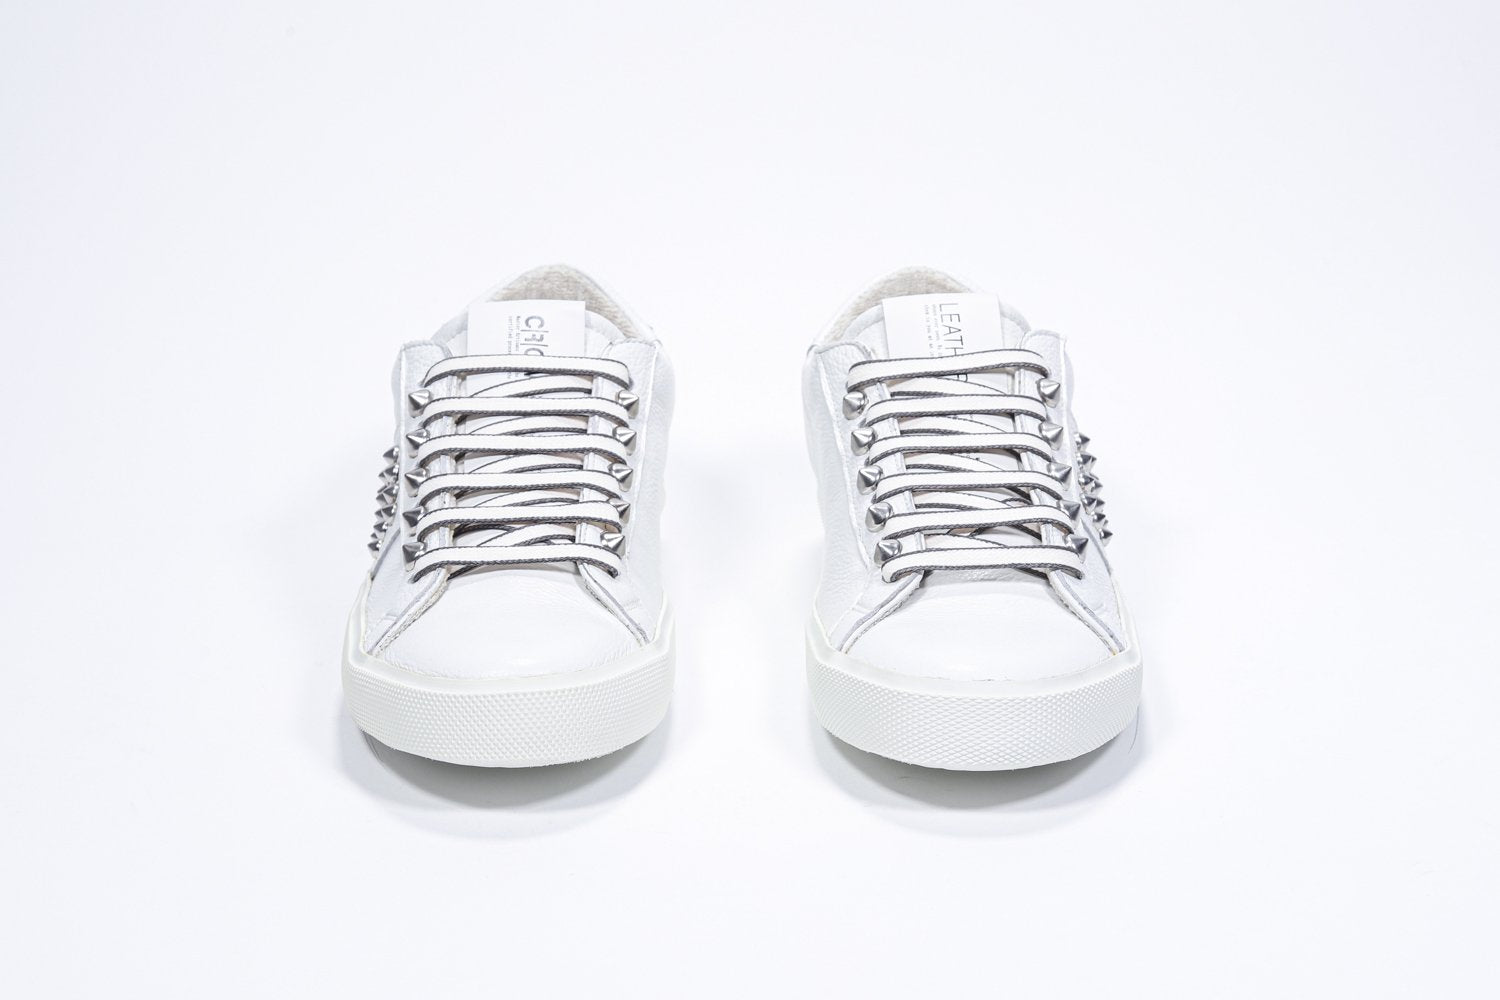 Vue de face de la chaussure blanche sneaker. Tige en cuir avec clous et semelle en caoutchouc blanc.